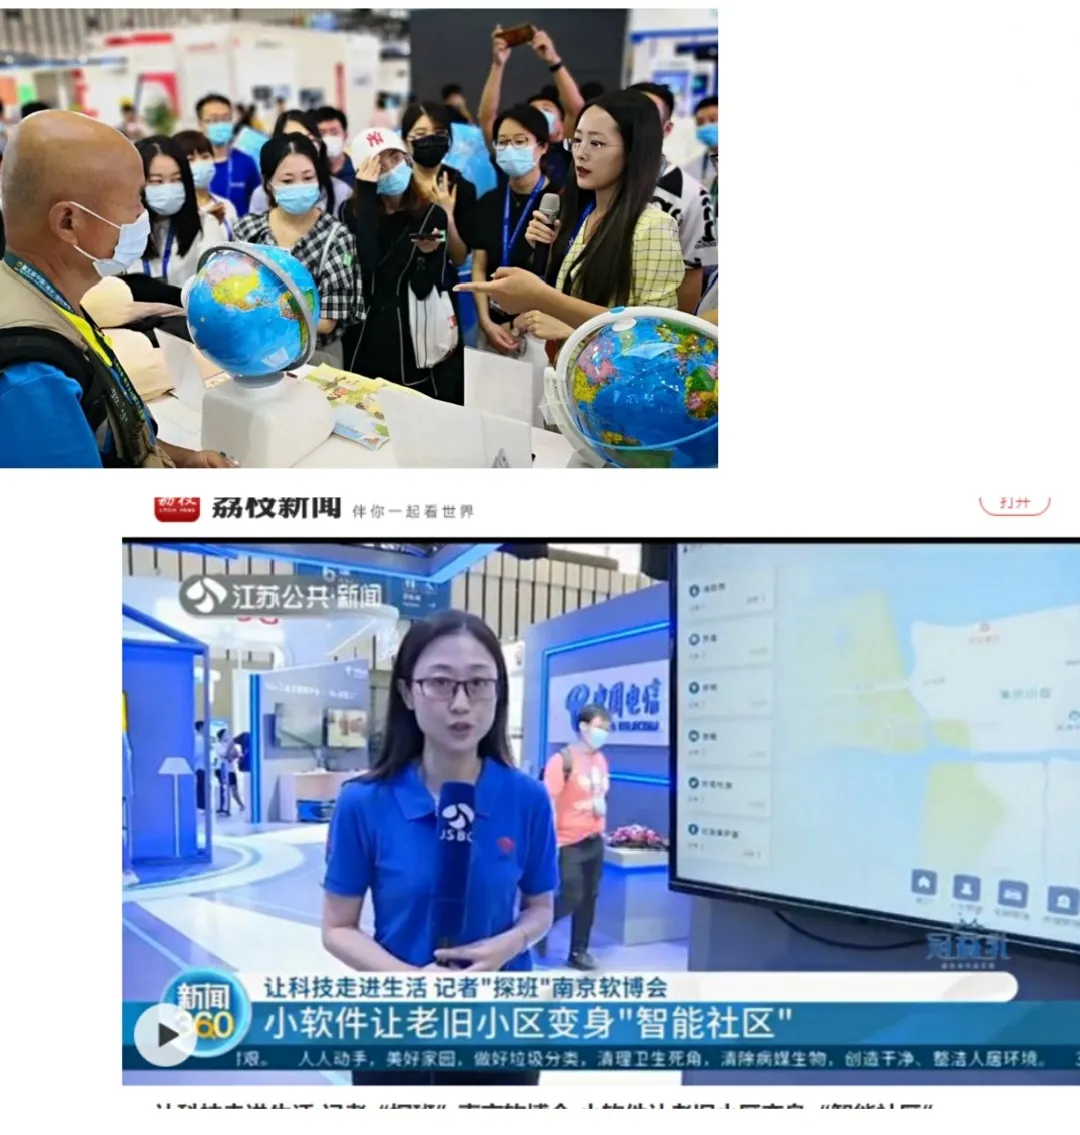 2021 中国（南京）国际软件产品和信息服务交易博览会